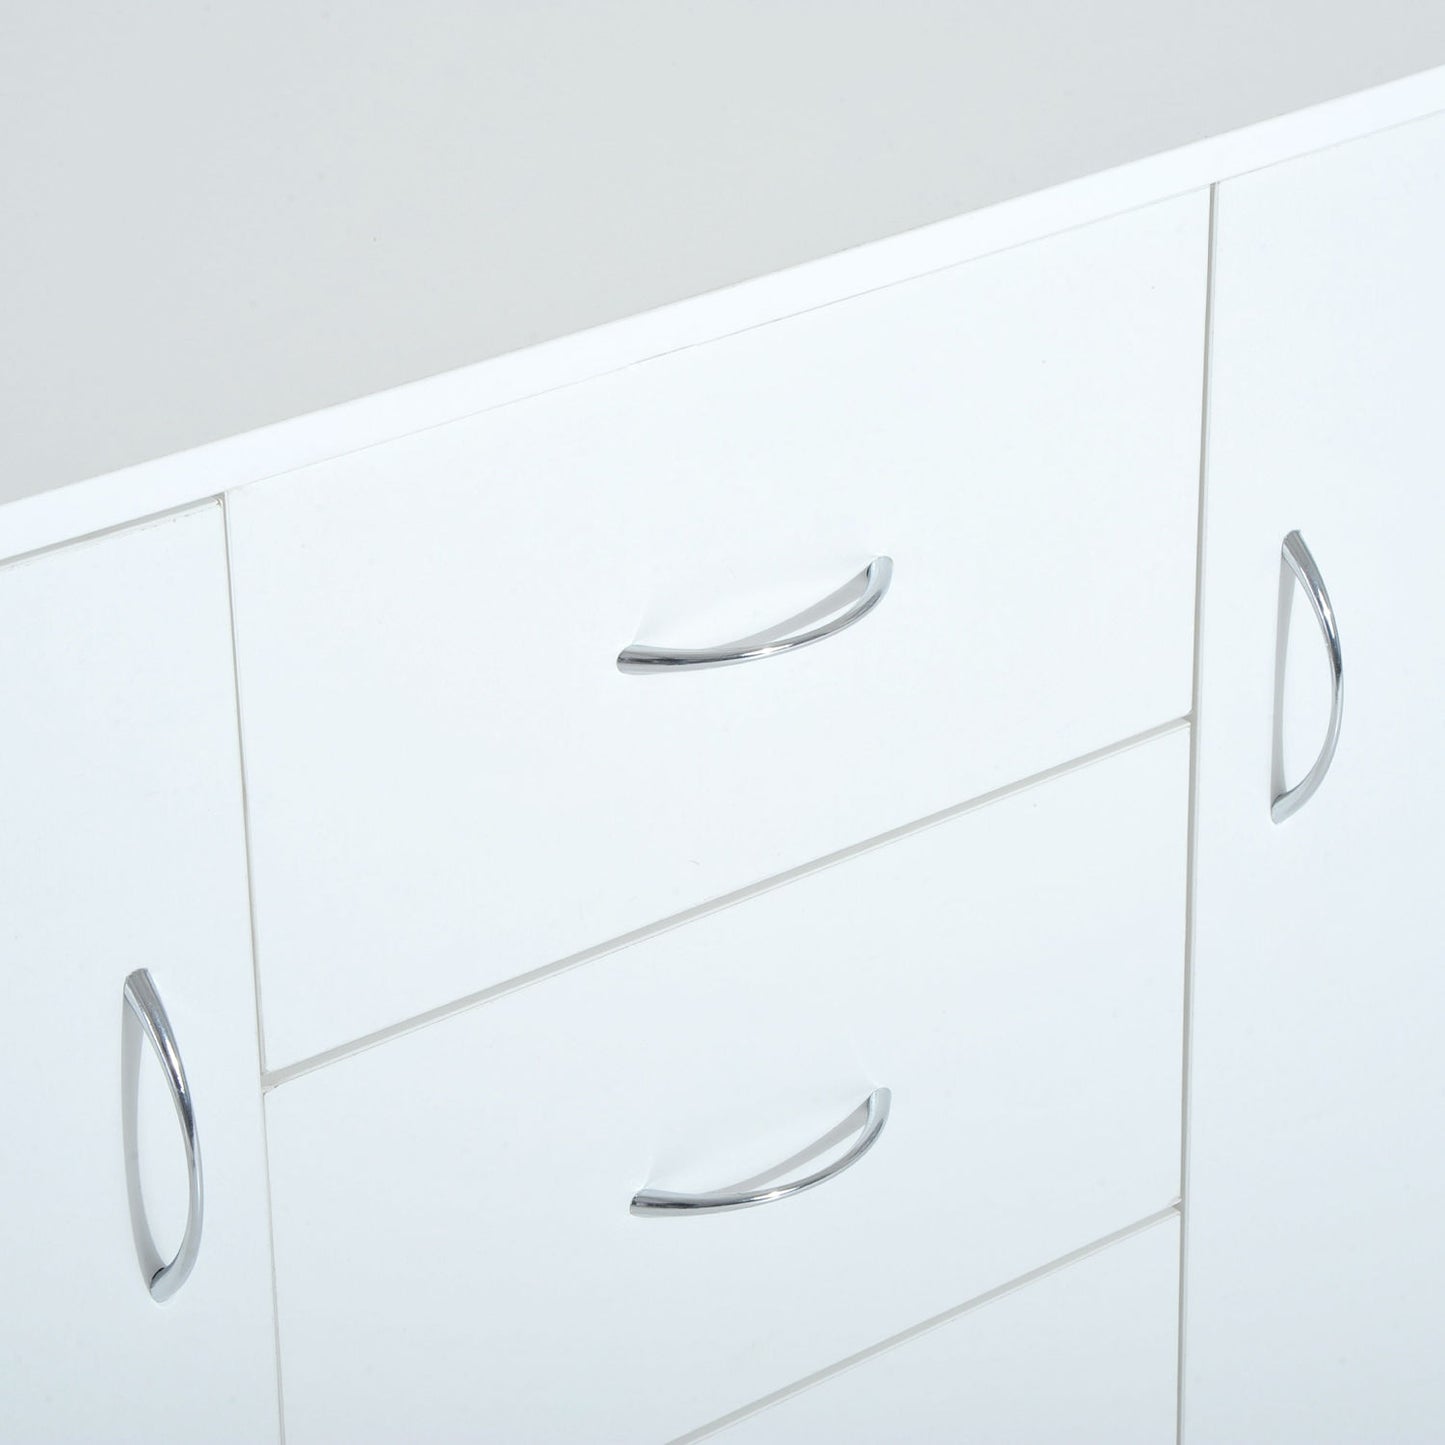 HOMCOM 120Wx40Dx90H cm Drawer Cabinet-White